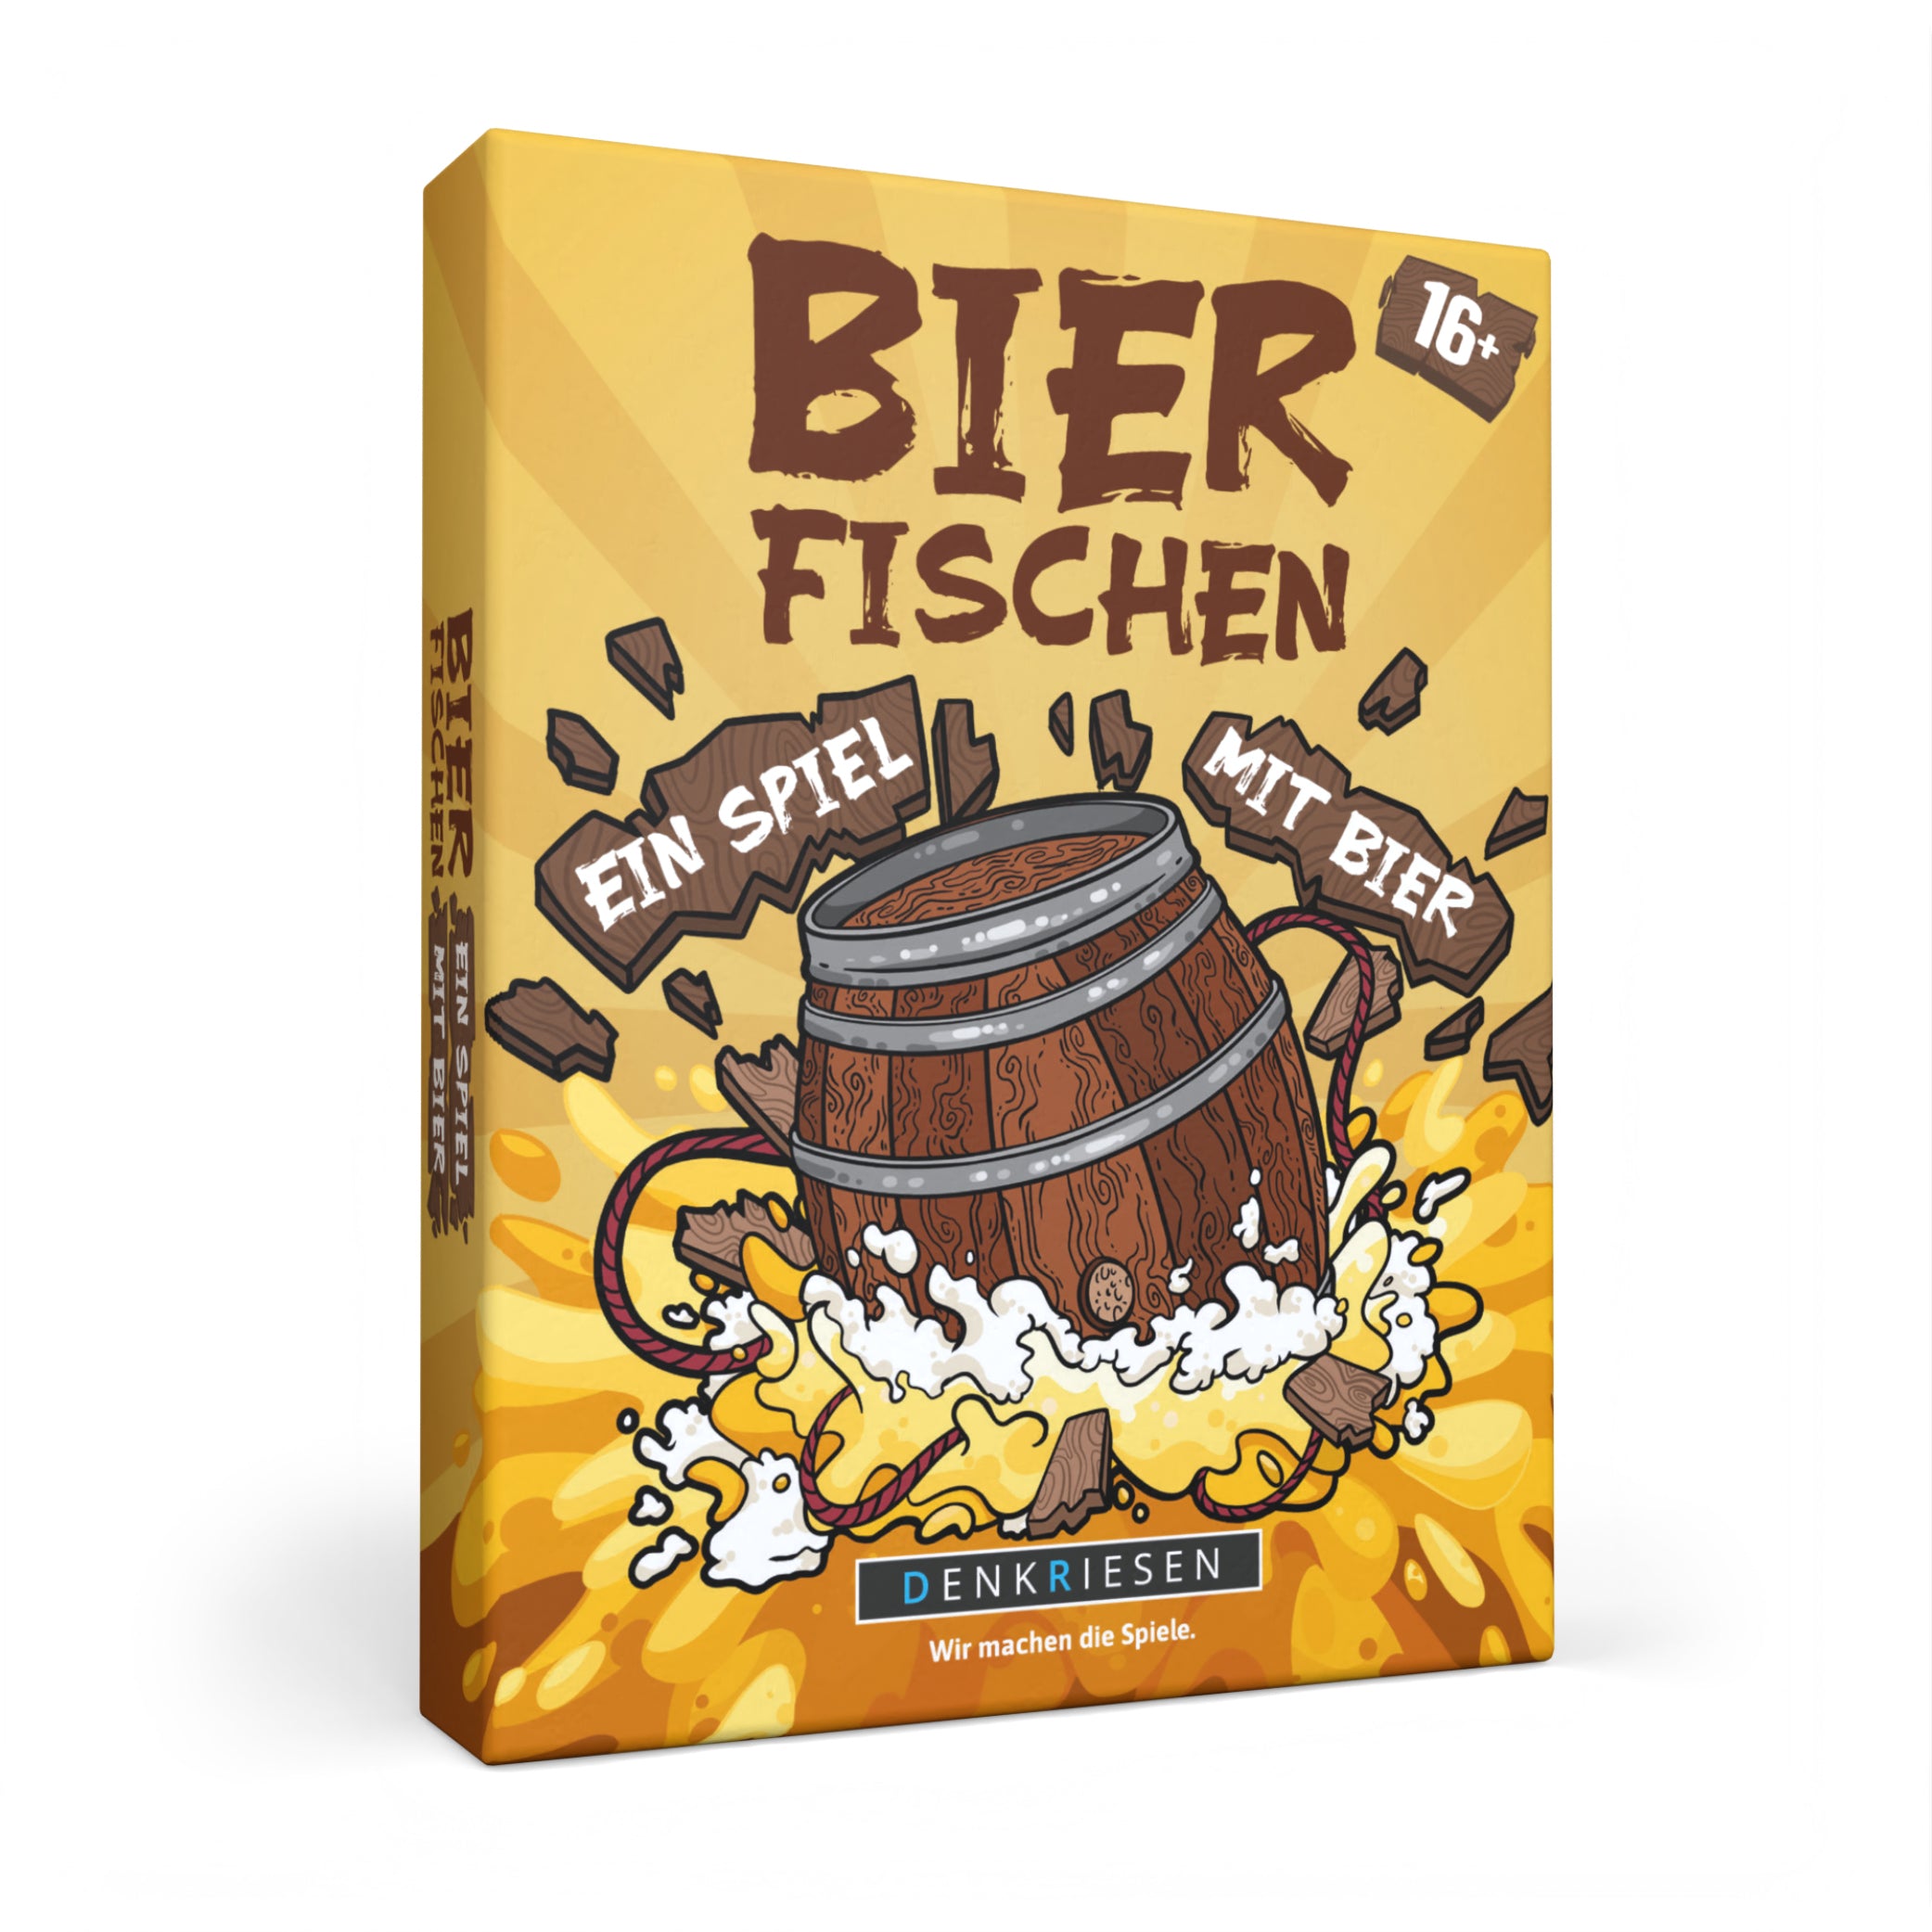 DENKRIESEN - Bierfischen - "Ein Spiel mit Bier"